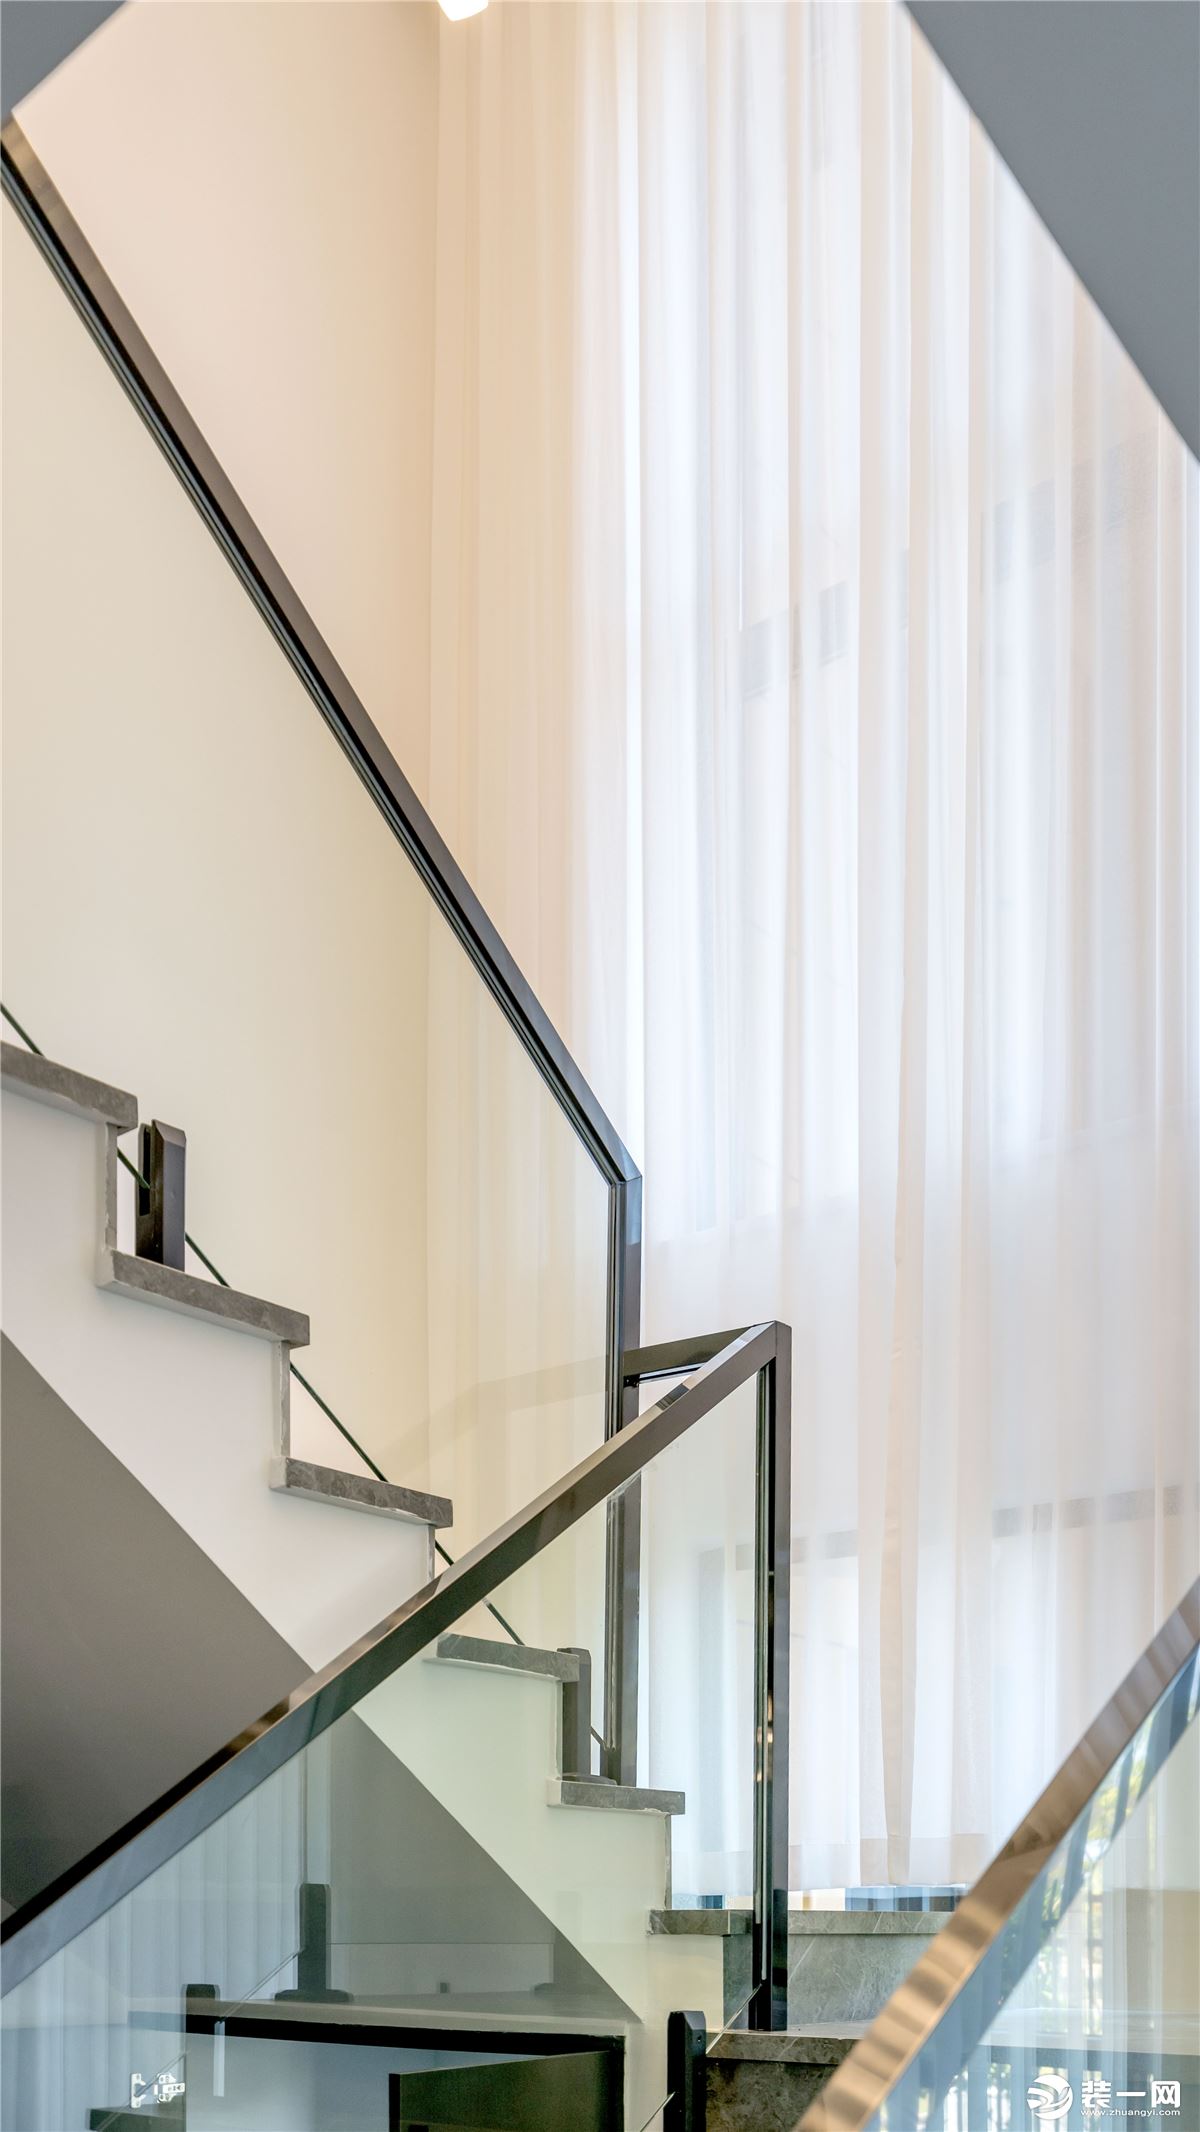 楼梯的护栏采用了玻璃的材质配上钛黑色的不锈钢扶手，再搭配上亮灰色的大理石瓷砖，整体非常的显高级、清冷